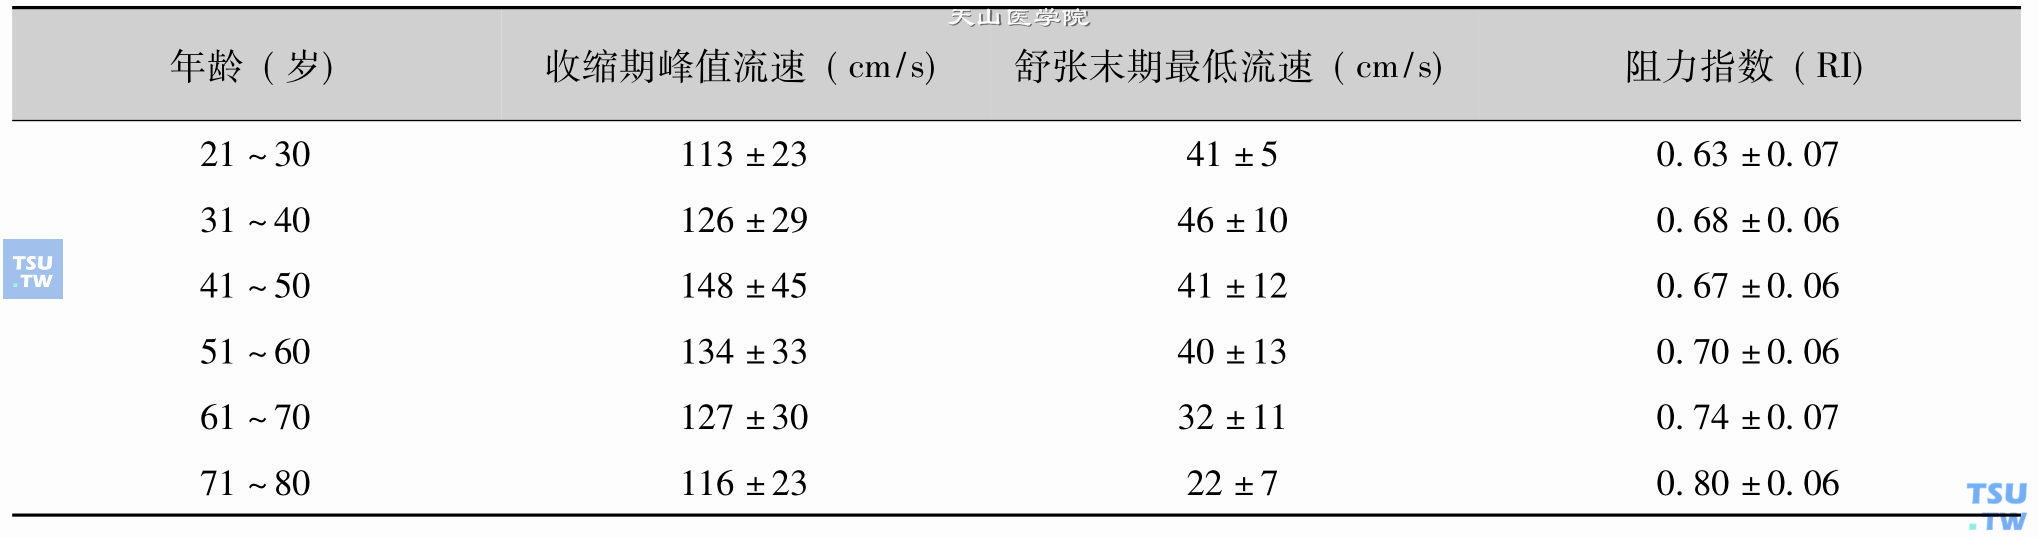 正常人不同年龄肾动脉血流参数测值（X±SD）